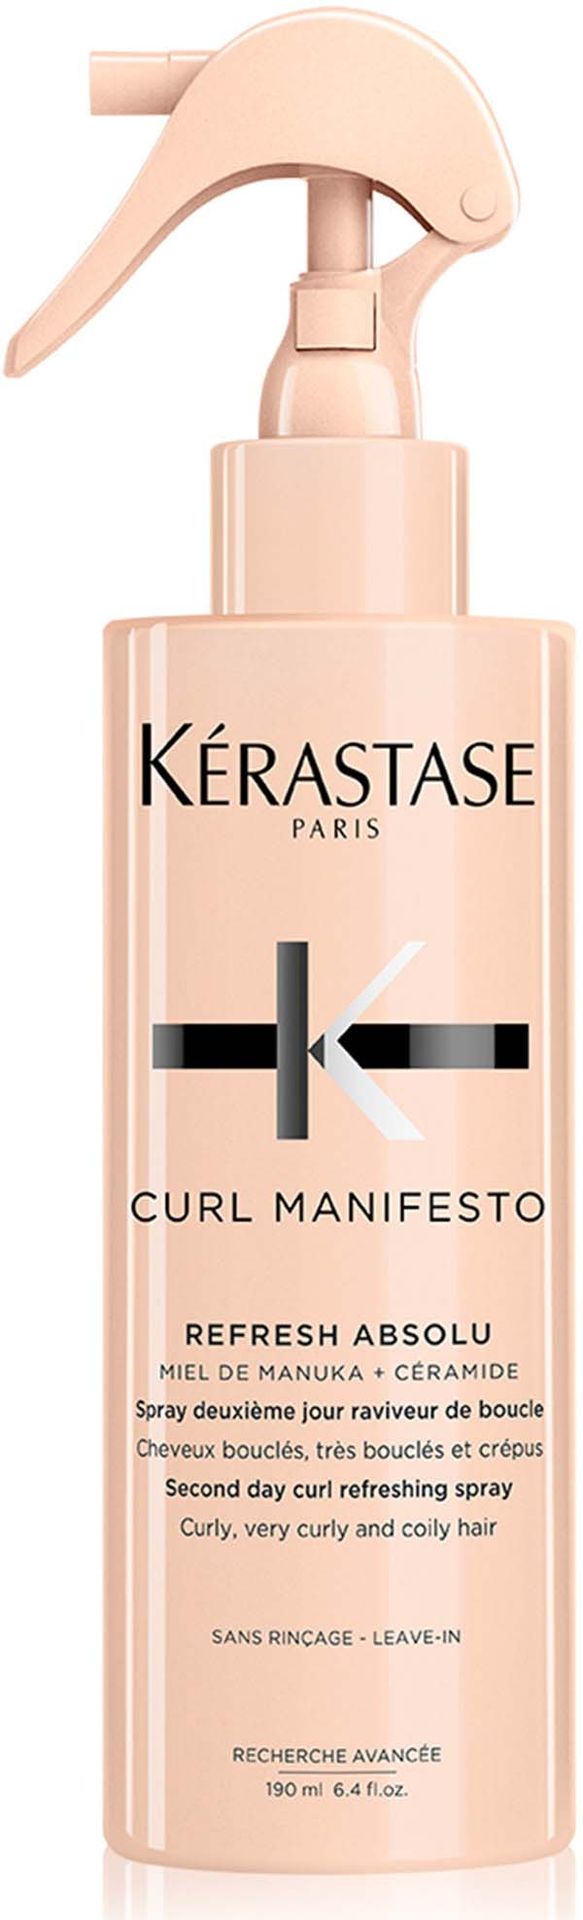 Kerastase Curl Manifesto Refresh Absolu spray odświeżający do włosów kręconych i falowanych 190 ml